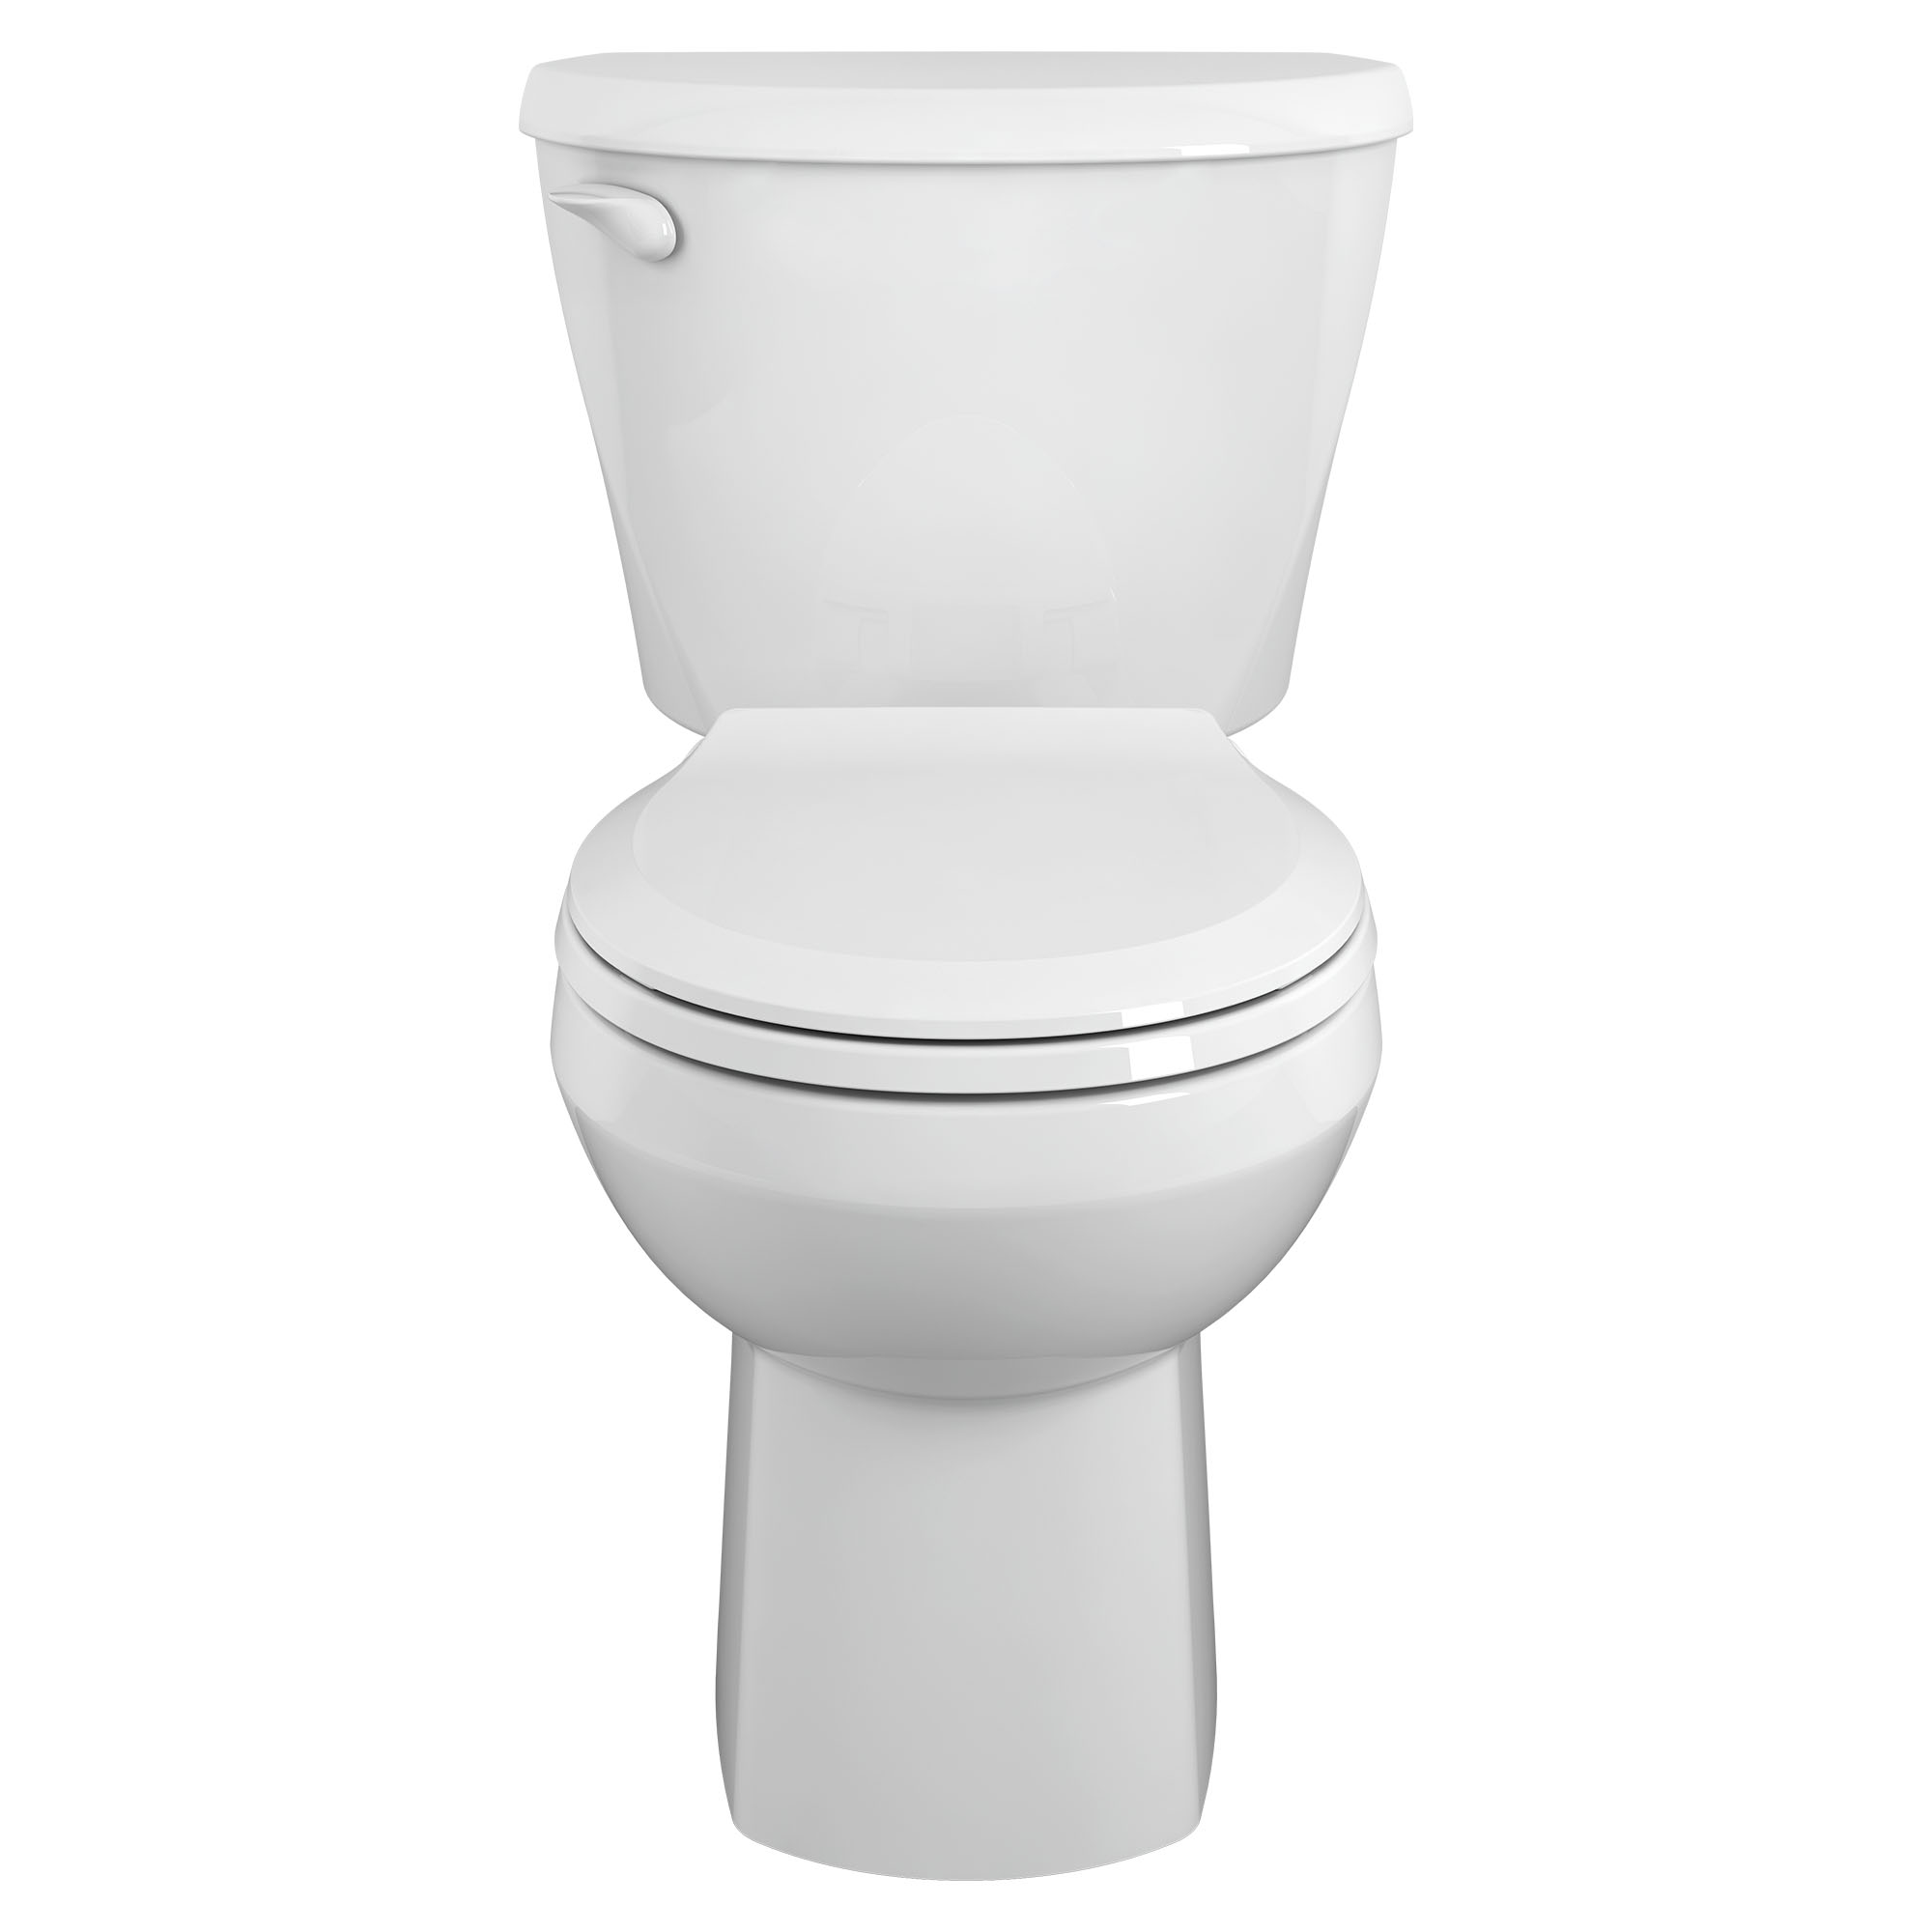 Toilette ColonyMC 3, 2 pièces, 1,28 gpc/4,8 lpc, à cuvette au devant rond à hauteur régulière, sans siège